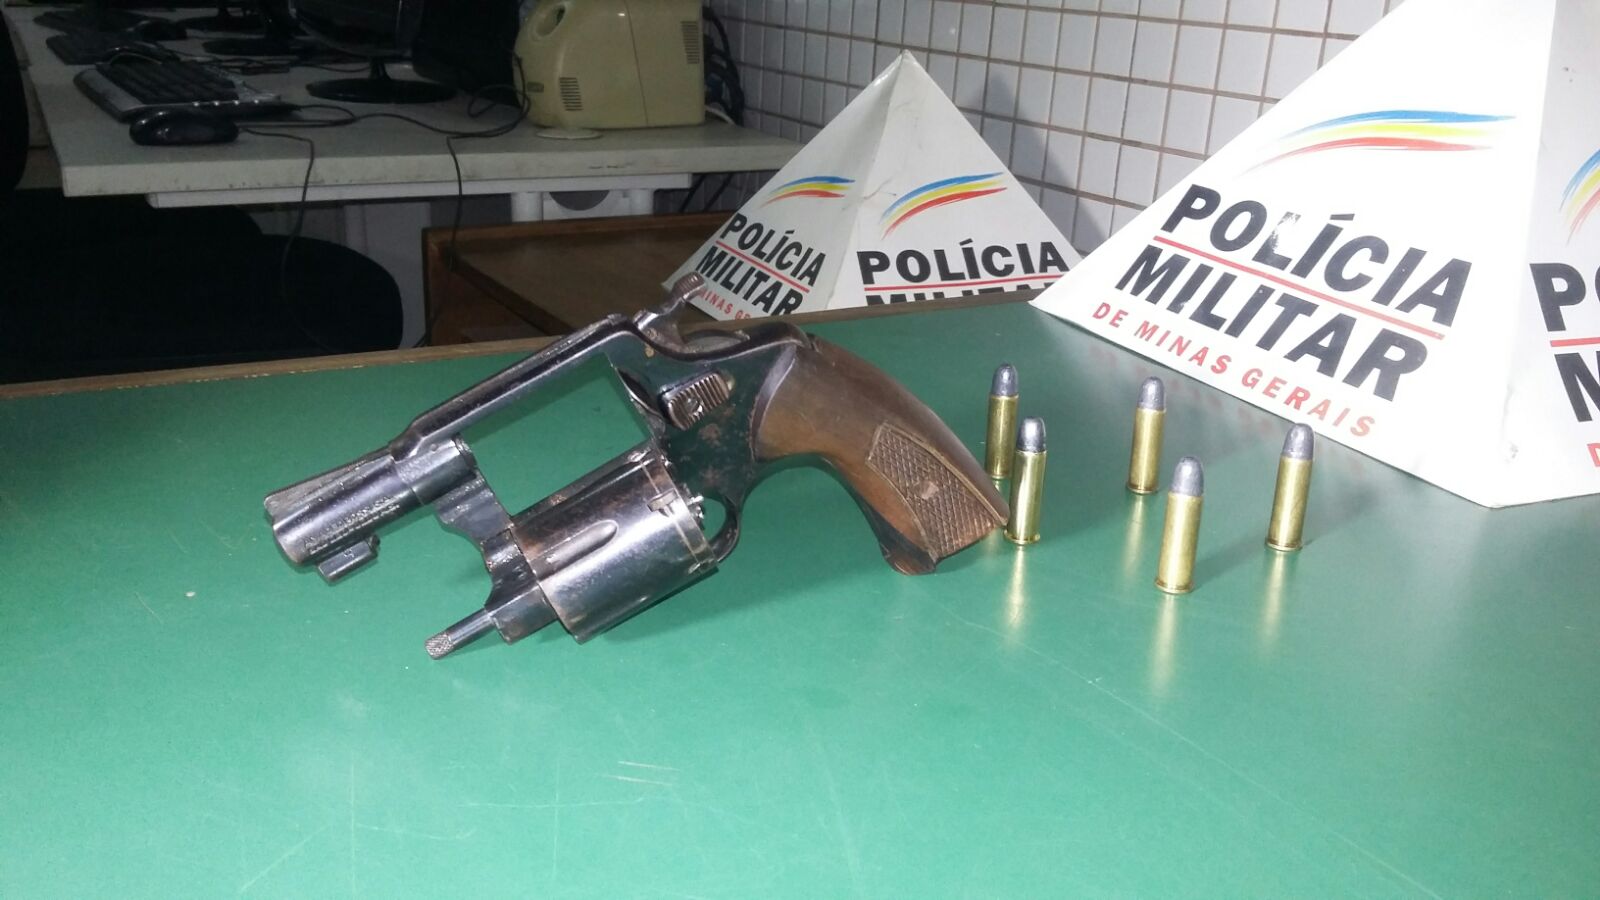 Denúncia leva à apreensão de arma de fogo em Santo Antônio do Manhuaçu